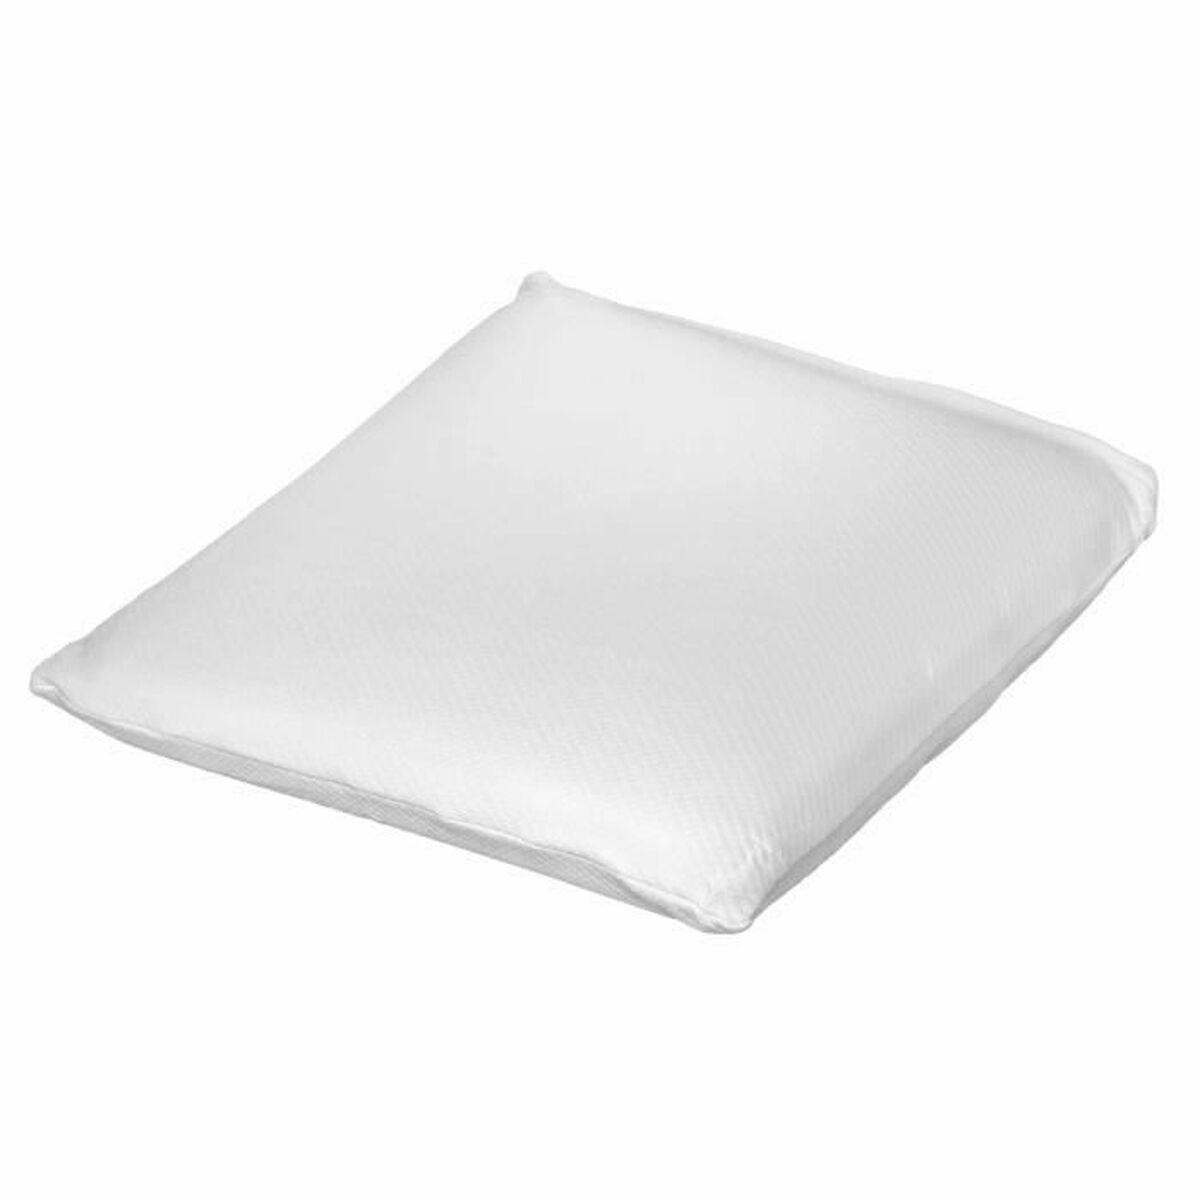 Pillow Toison D'or White 40 x 40 x 10 cm